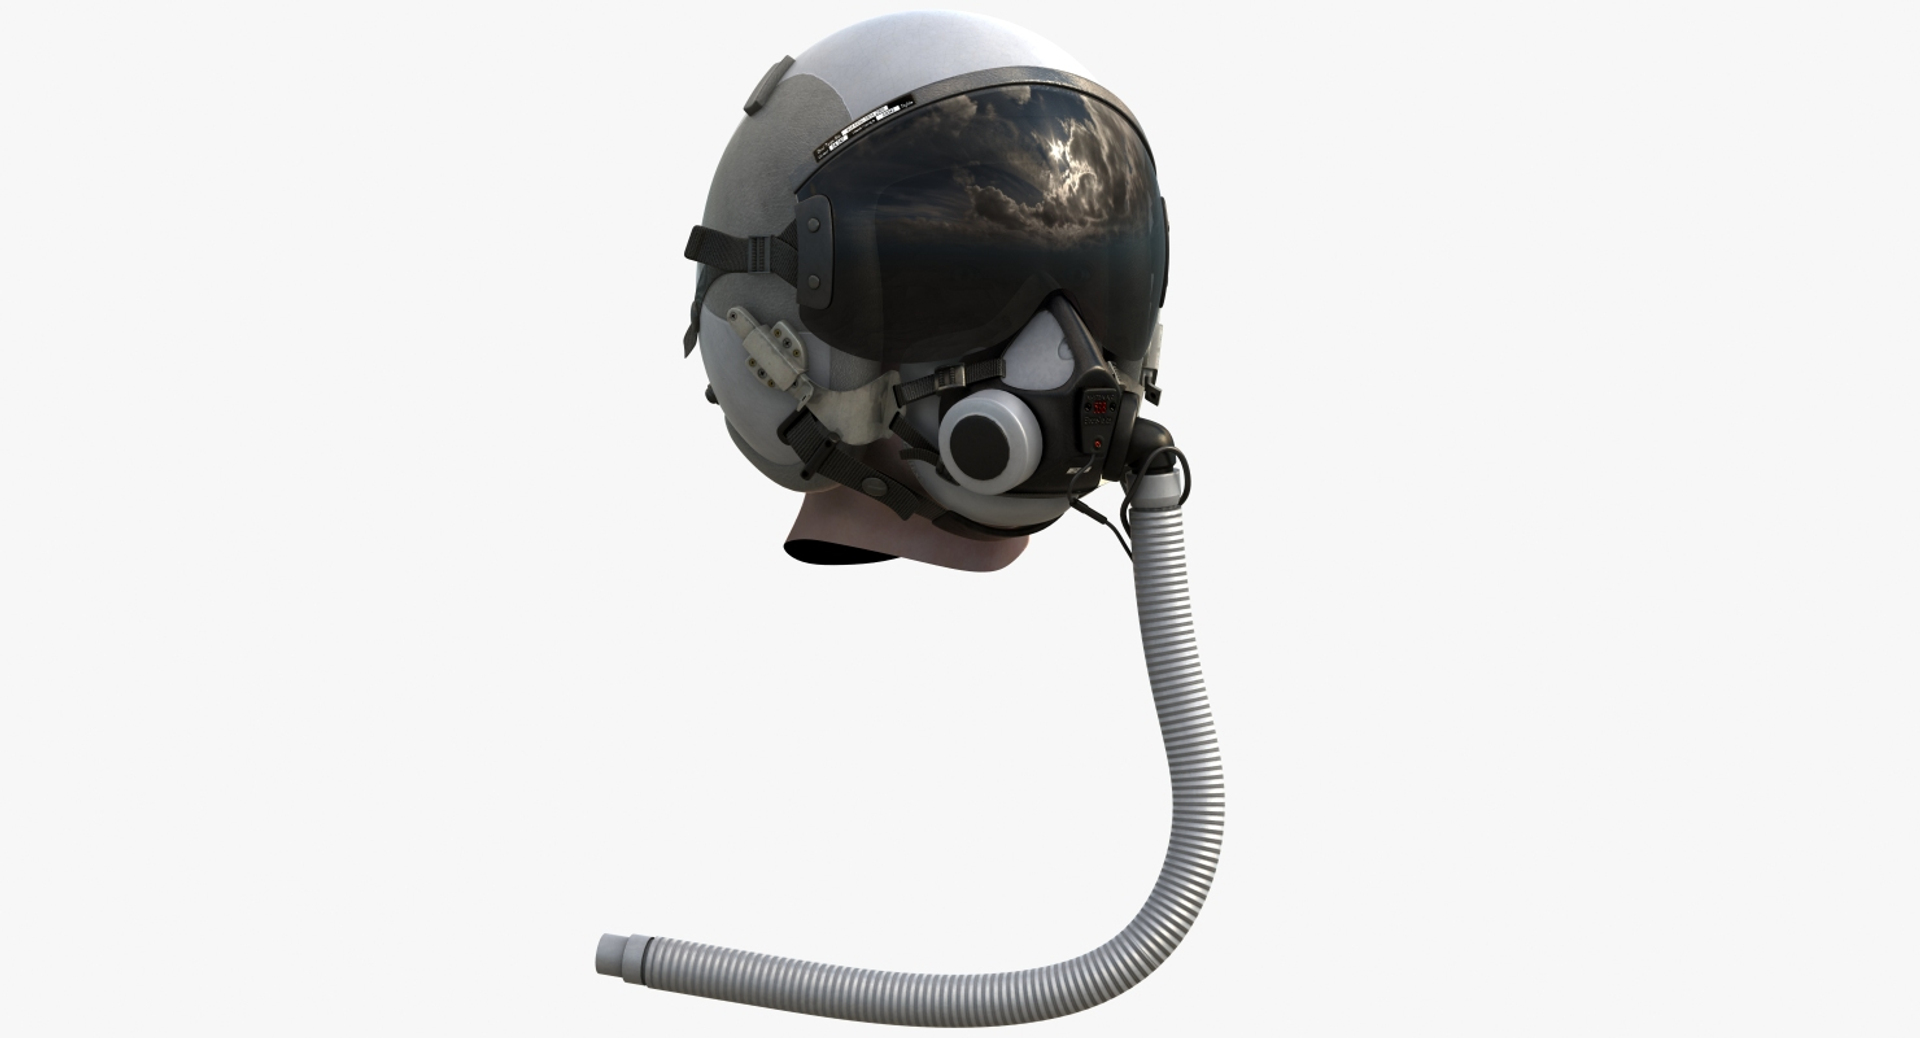 usaf fighter pilot helmet